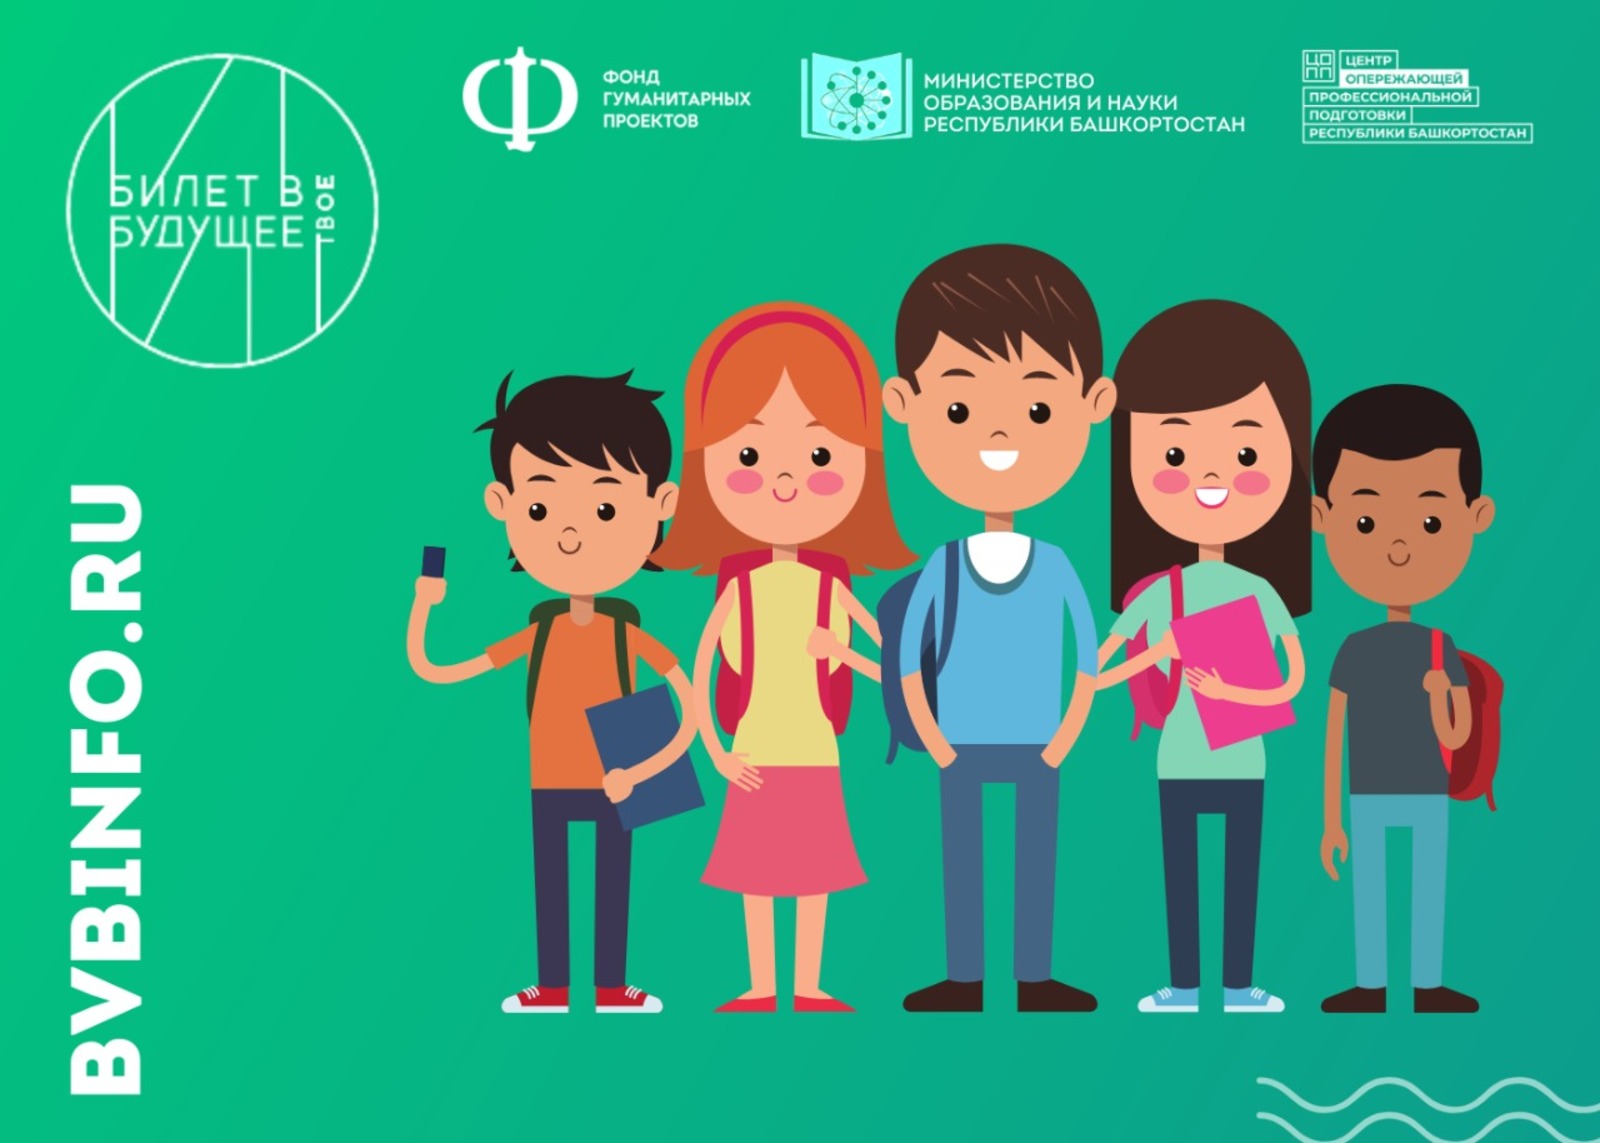 Нацпроект "Образование": 15 тысяч школьников Республики Башкортостан станут участниками проекта «Билет в будущее»